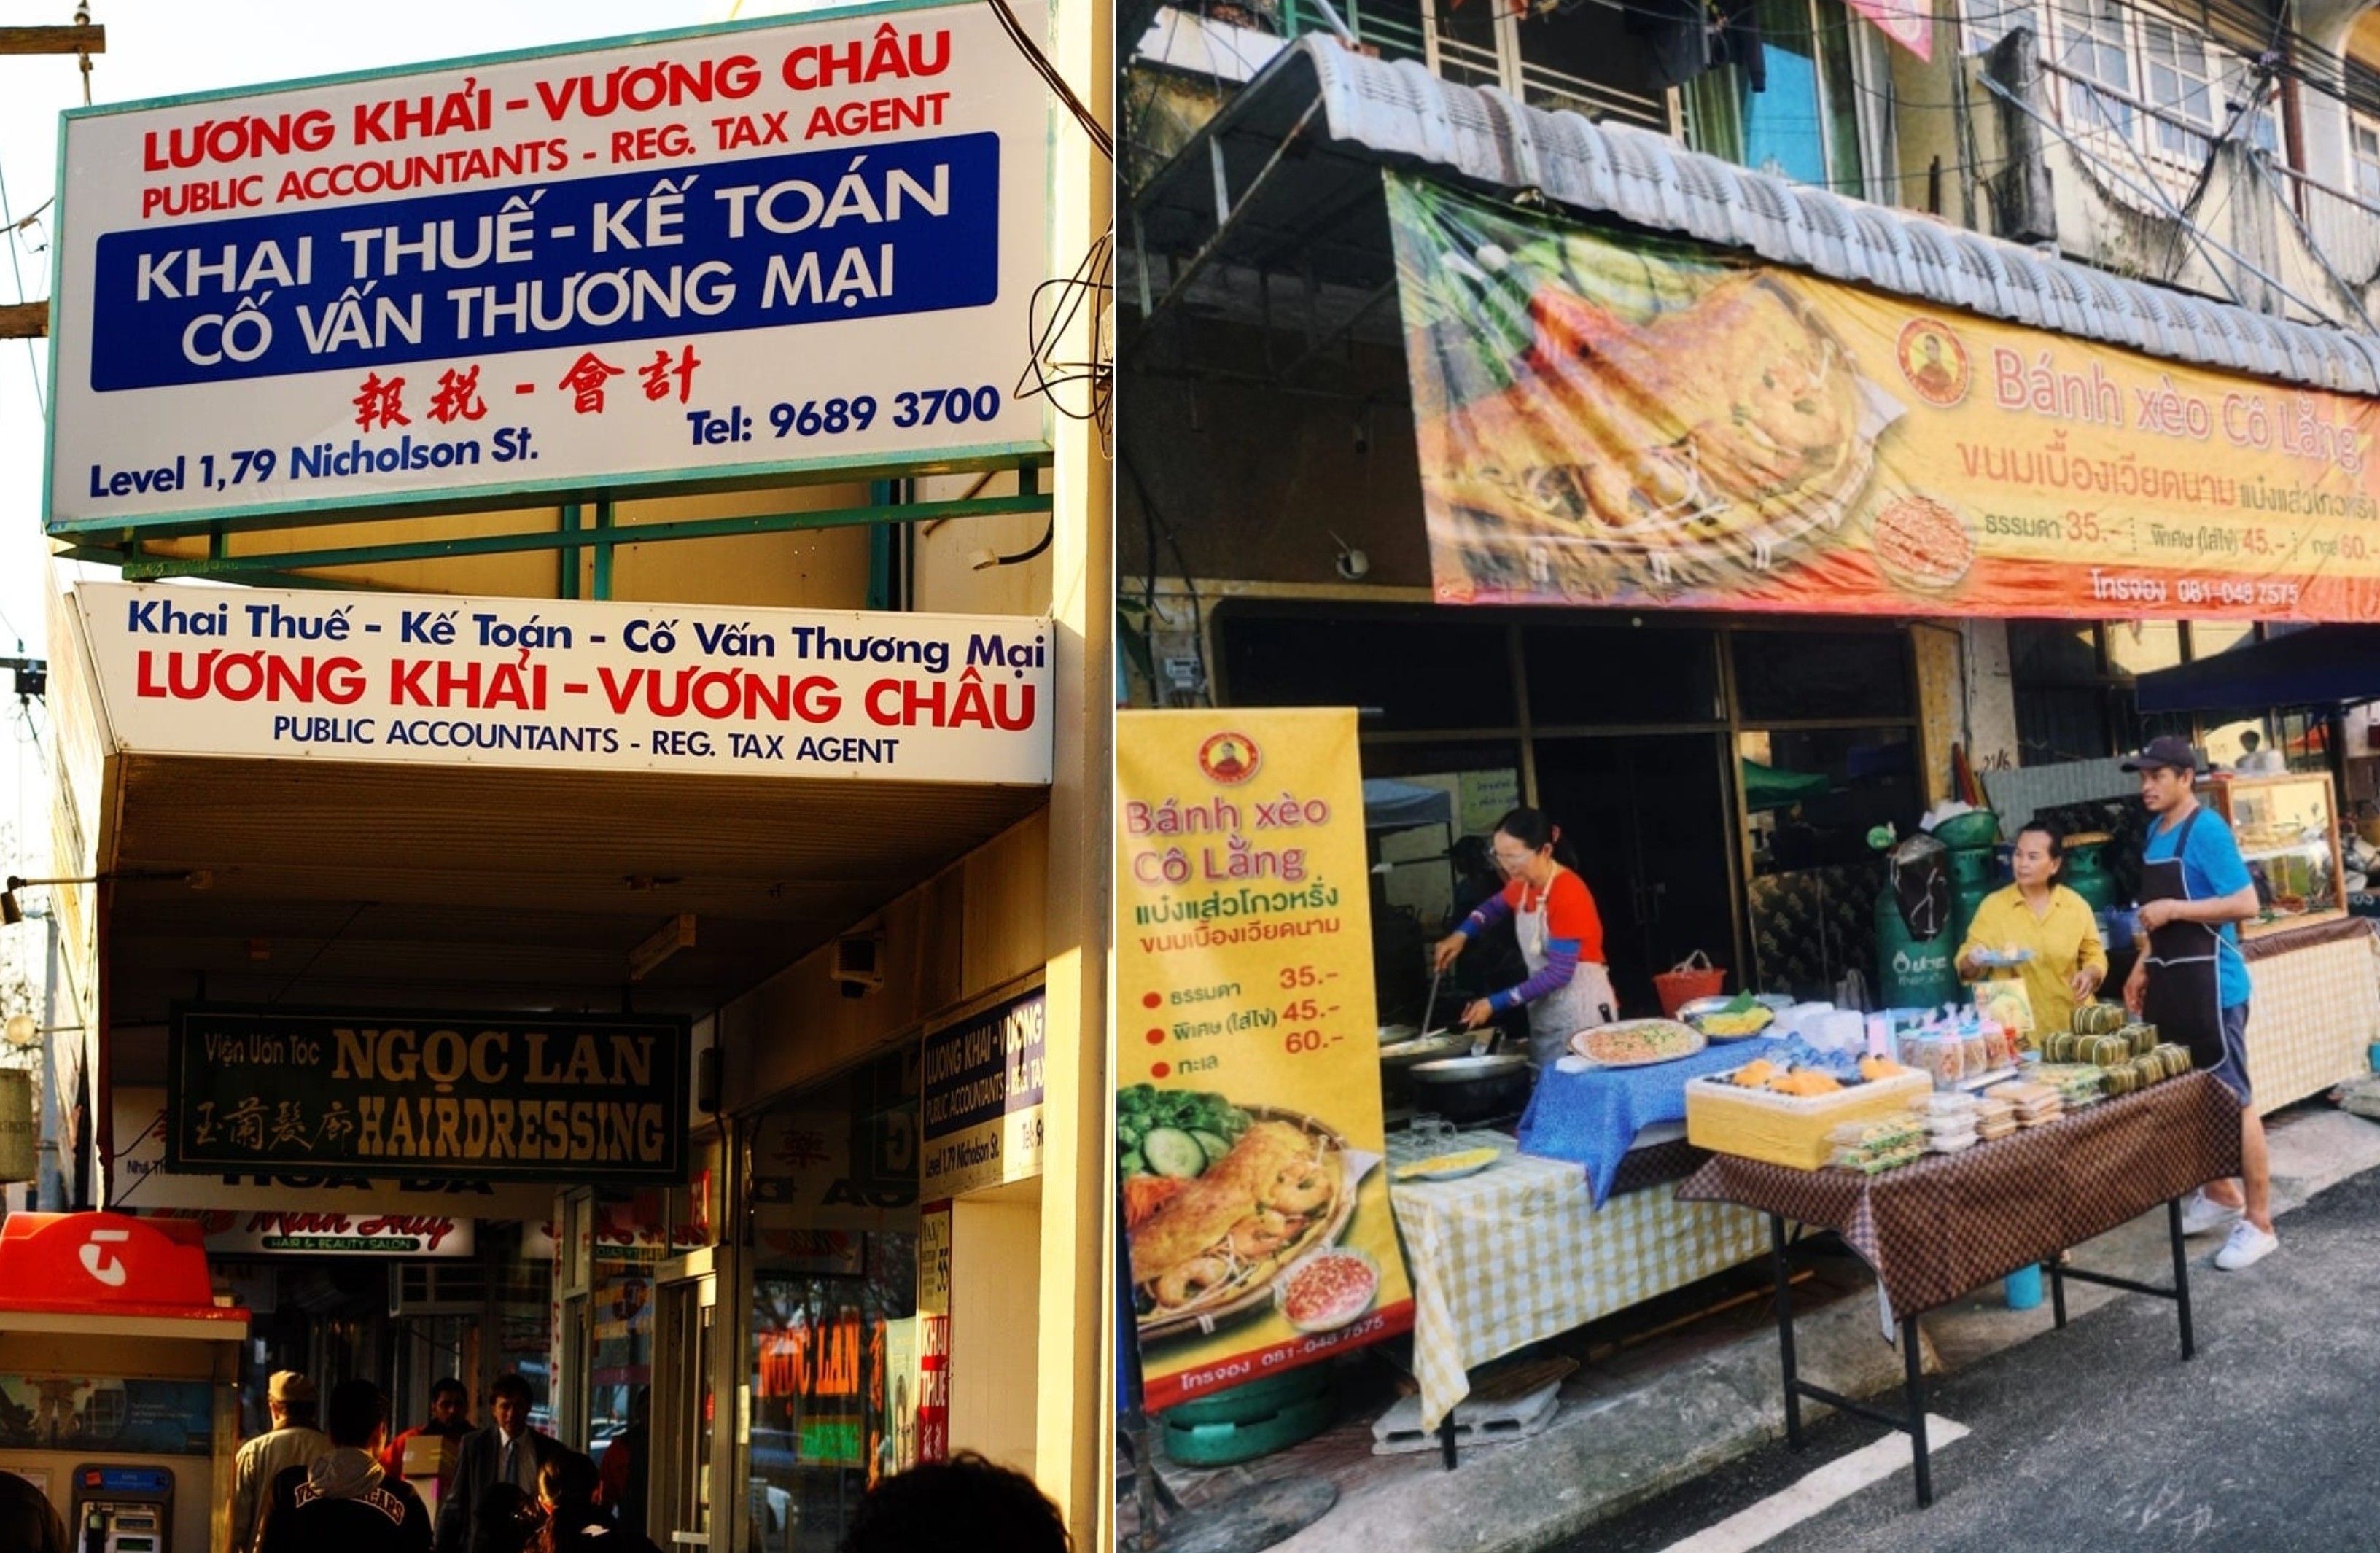 Khu phố người Việt ở nước ngoài: mang hương vị quê nhà ra thế giới